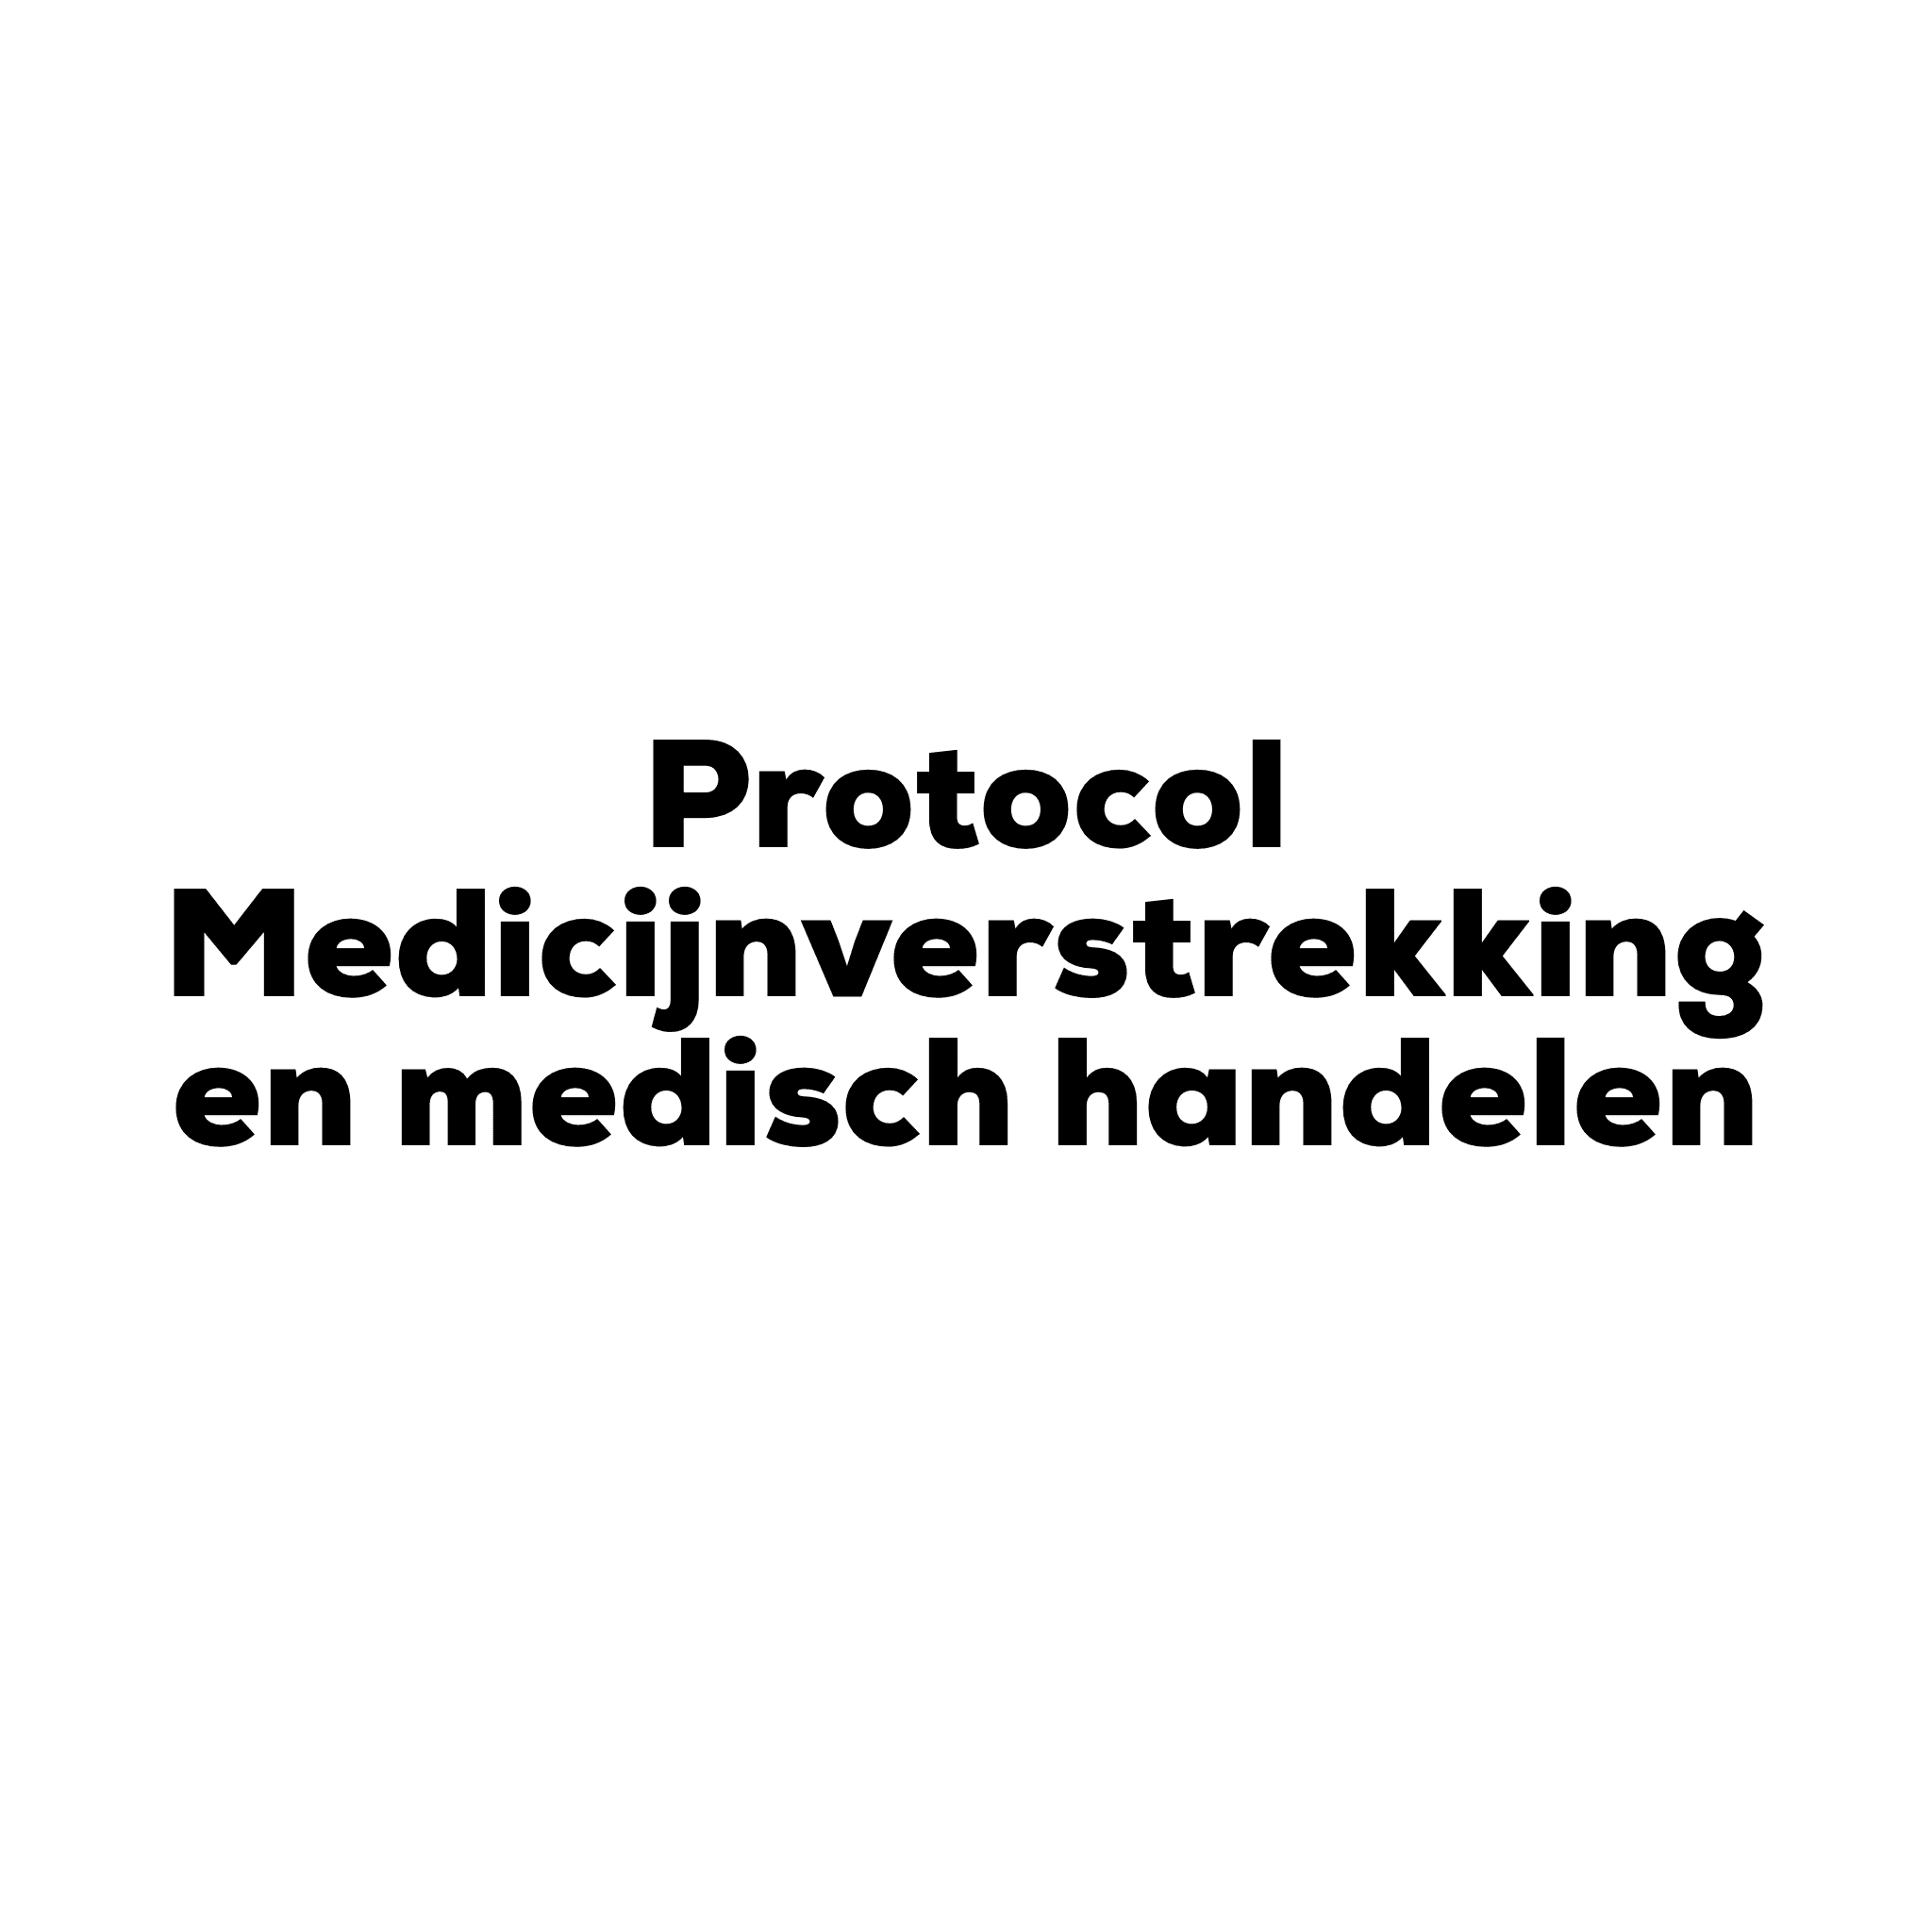 Protocol Medicijnverstrekking en medisch handelen